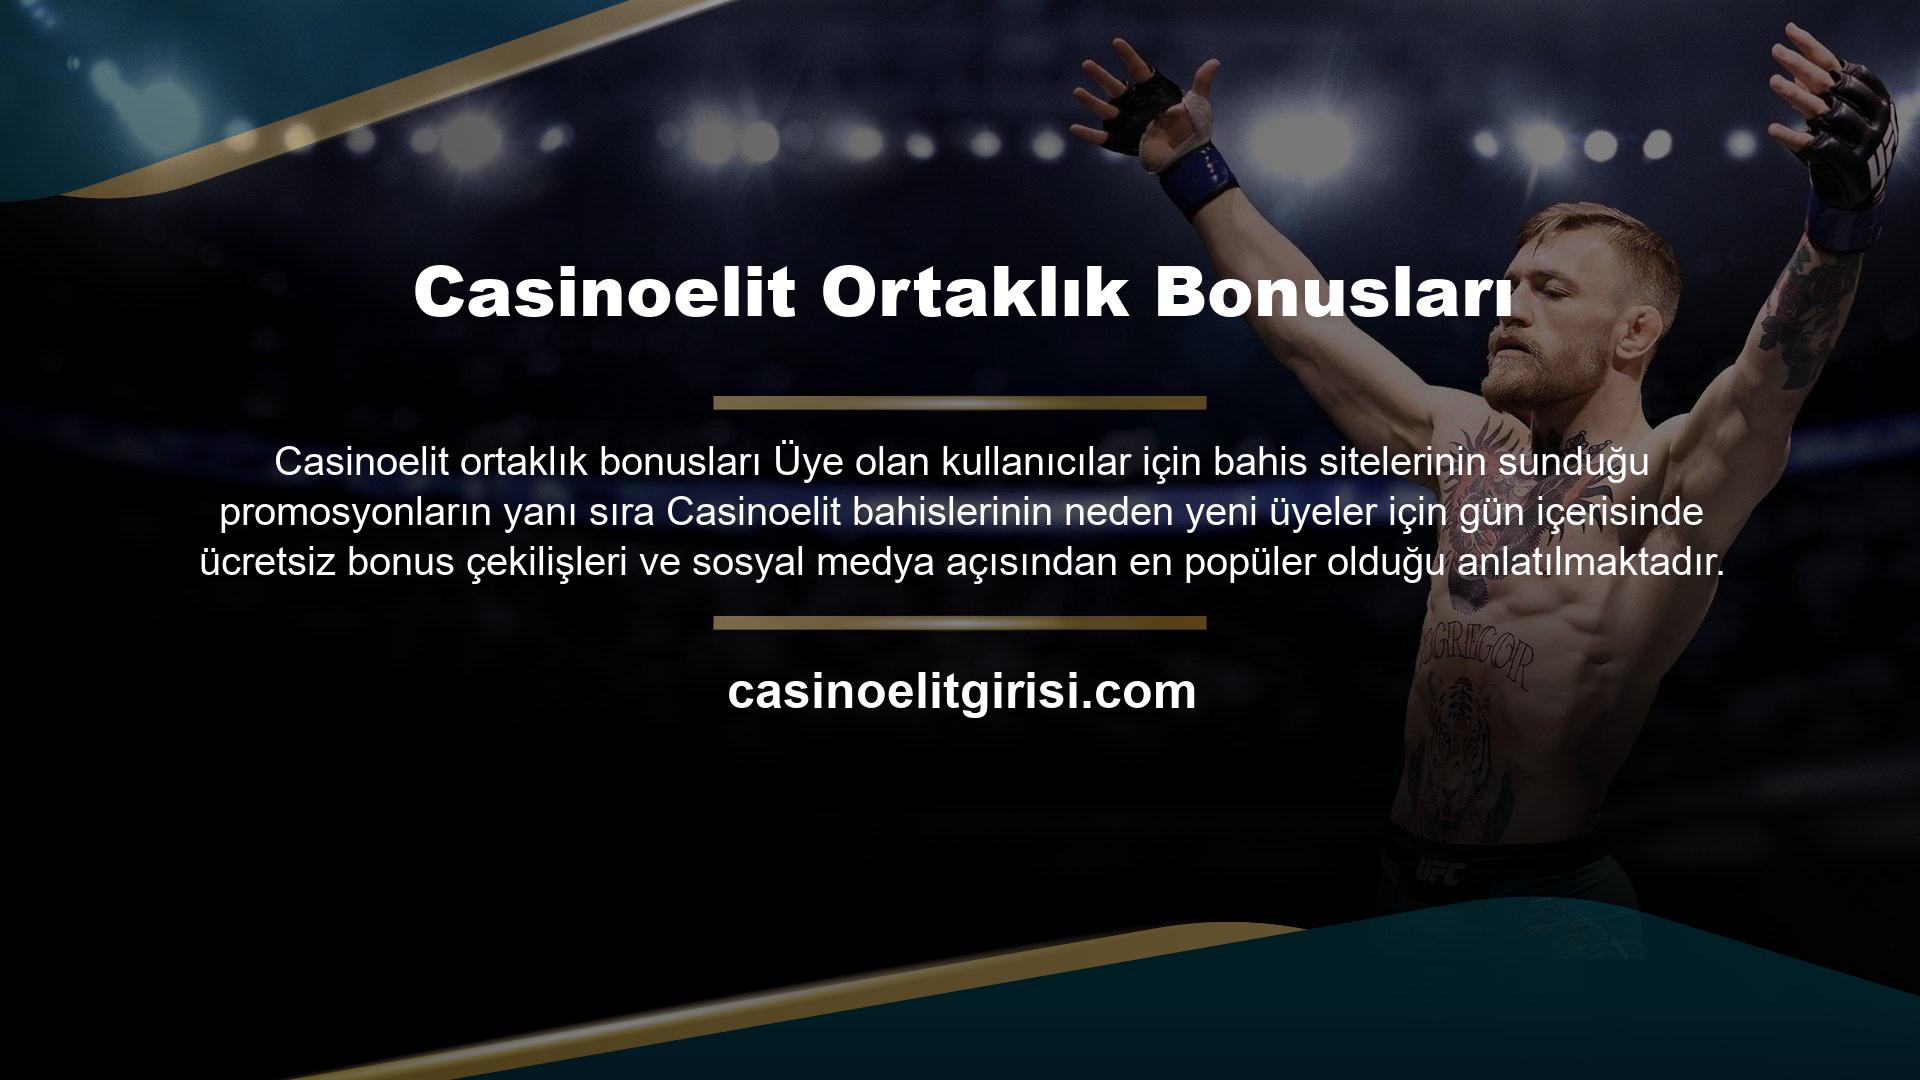 Casinoelit casino sitesinin promosyonları ve bonusları hakkında daha fazla bilgi için, bunlar hakkında daha fazla bilgi edinmek için siteye giriş yaptıktan sonra promosyonlar düğmesine tıklayabilirsiniz